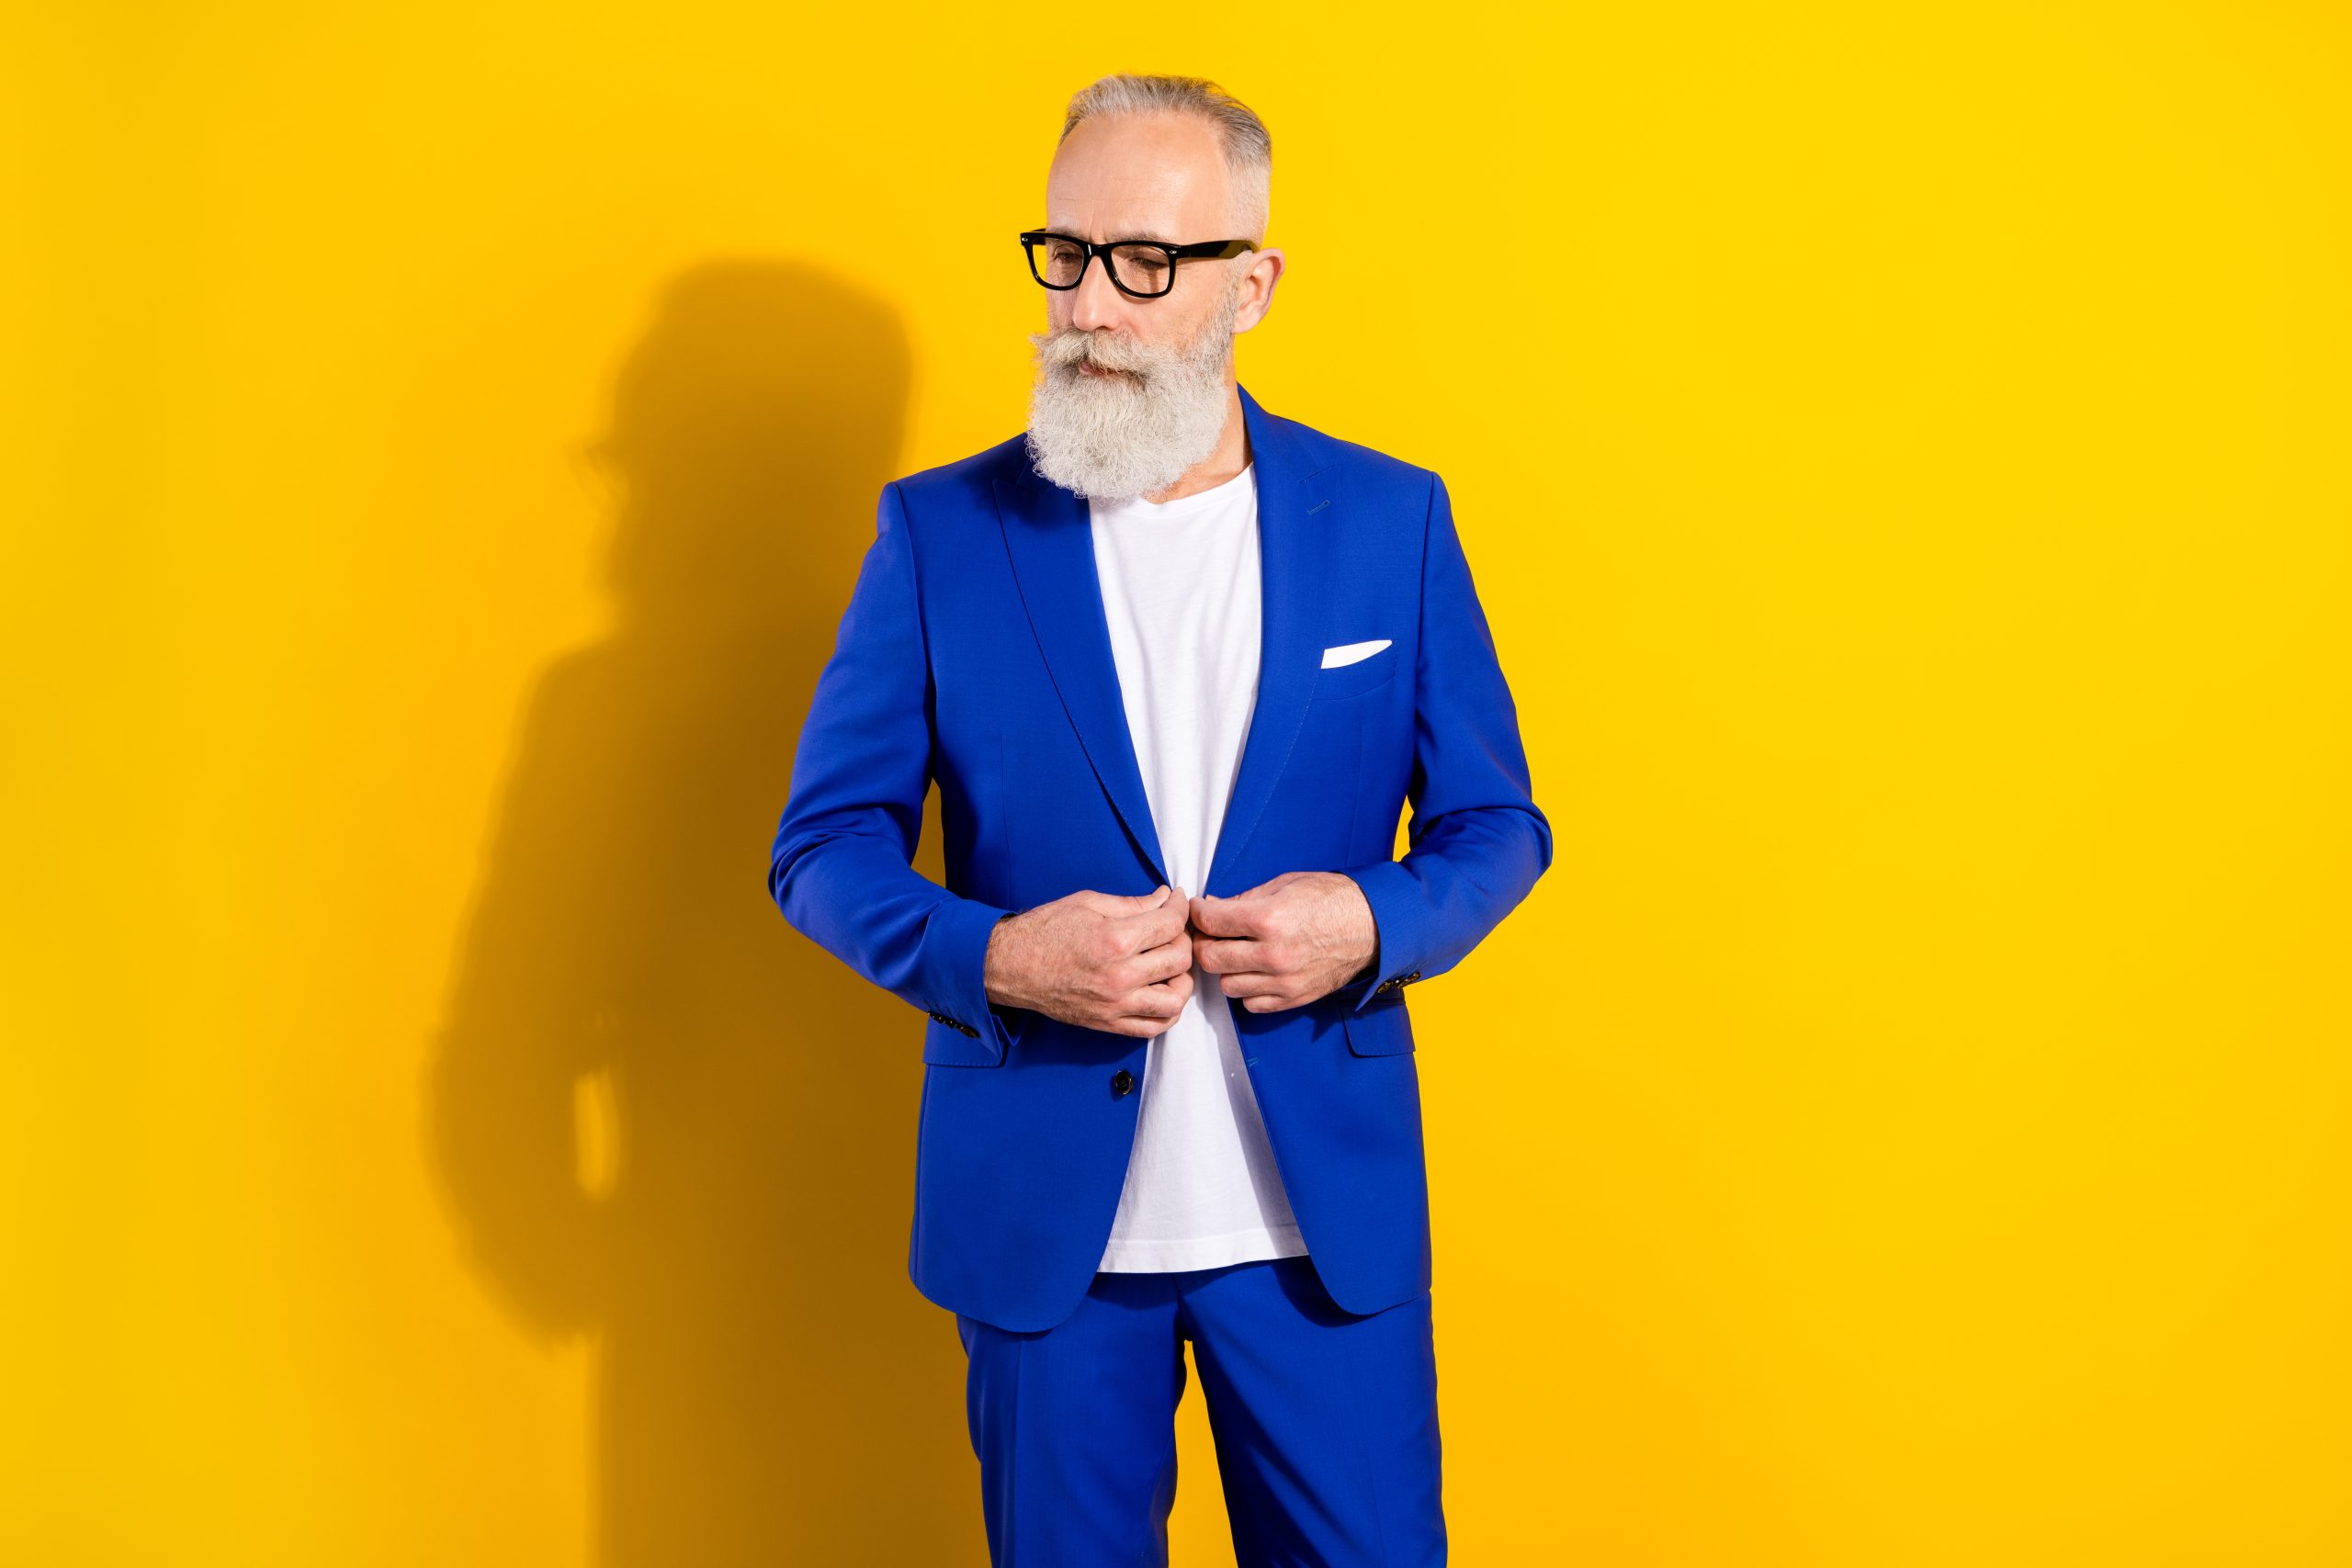 Bărbat ce poate fi un director de creație, îmbrăcat în costum albastru, cu barbă și ochelari, pe fundal galben.